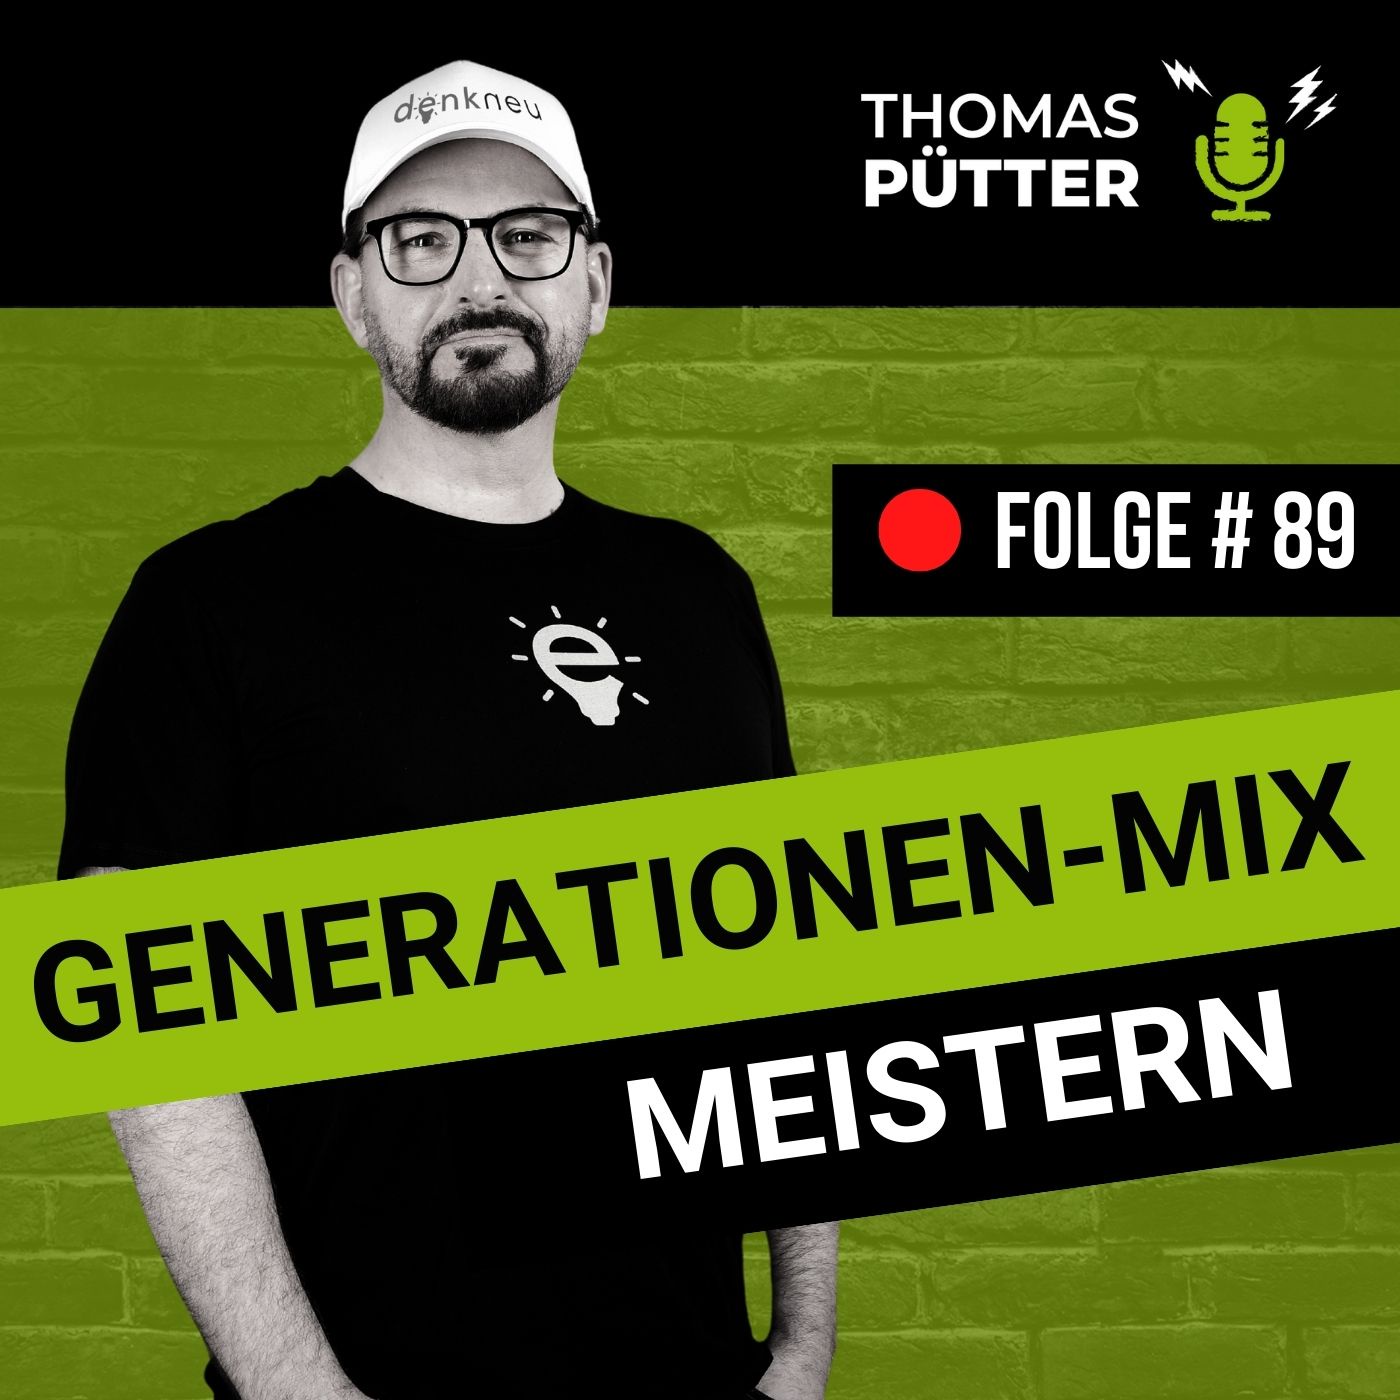 (89) Generationen-Mix meistern mit Generational Leadership